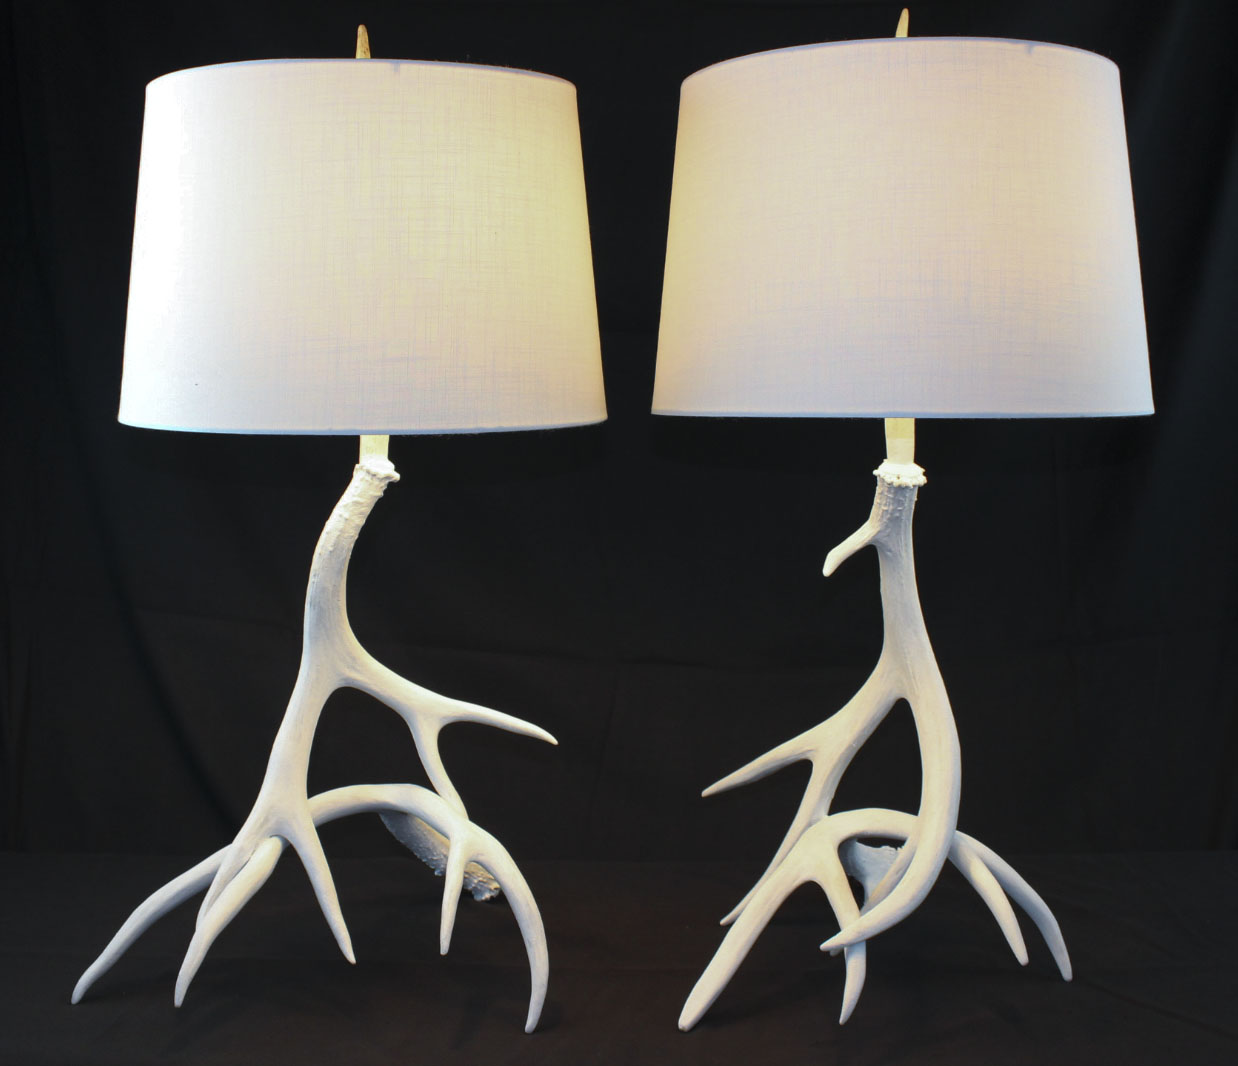 Custom Mule Deer Antler Table Lamps – Antler Creek Wildlife Creations